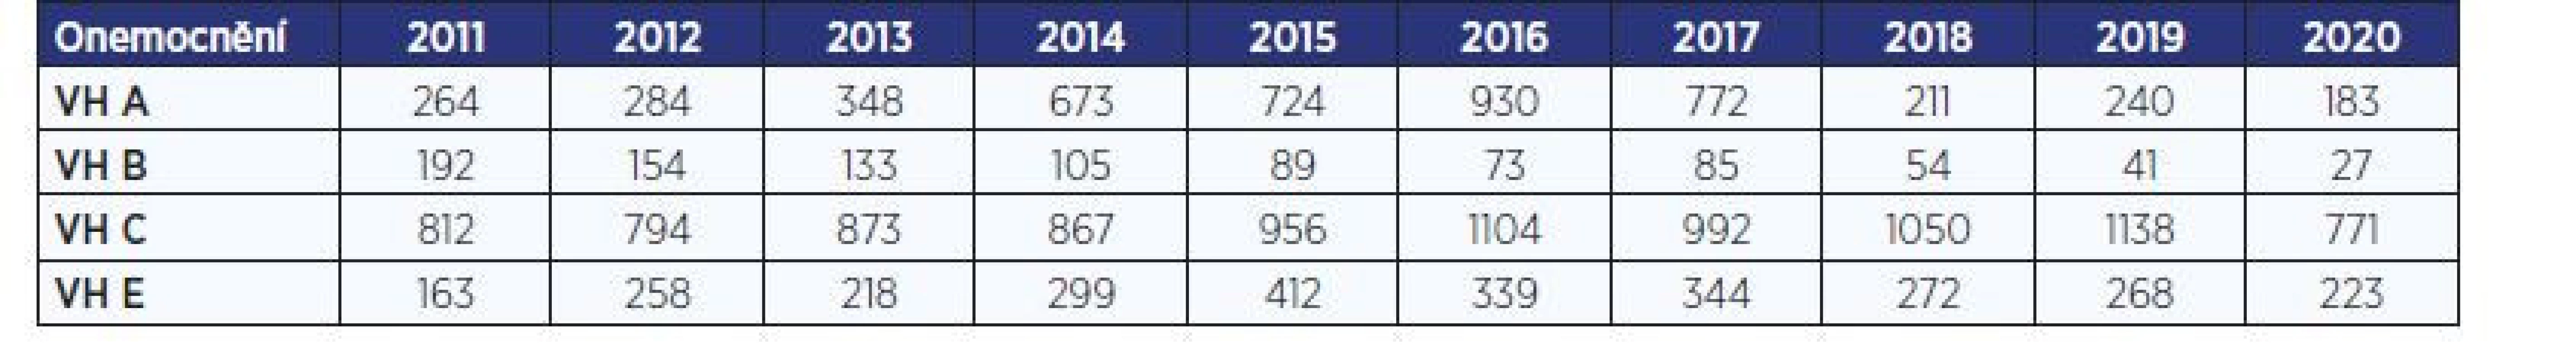 Počty hlášených případů virových hepatitid (VH) v Česku v letech 2011–2020 (dle ISIN)